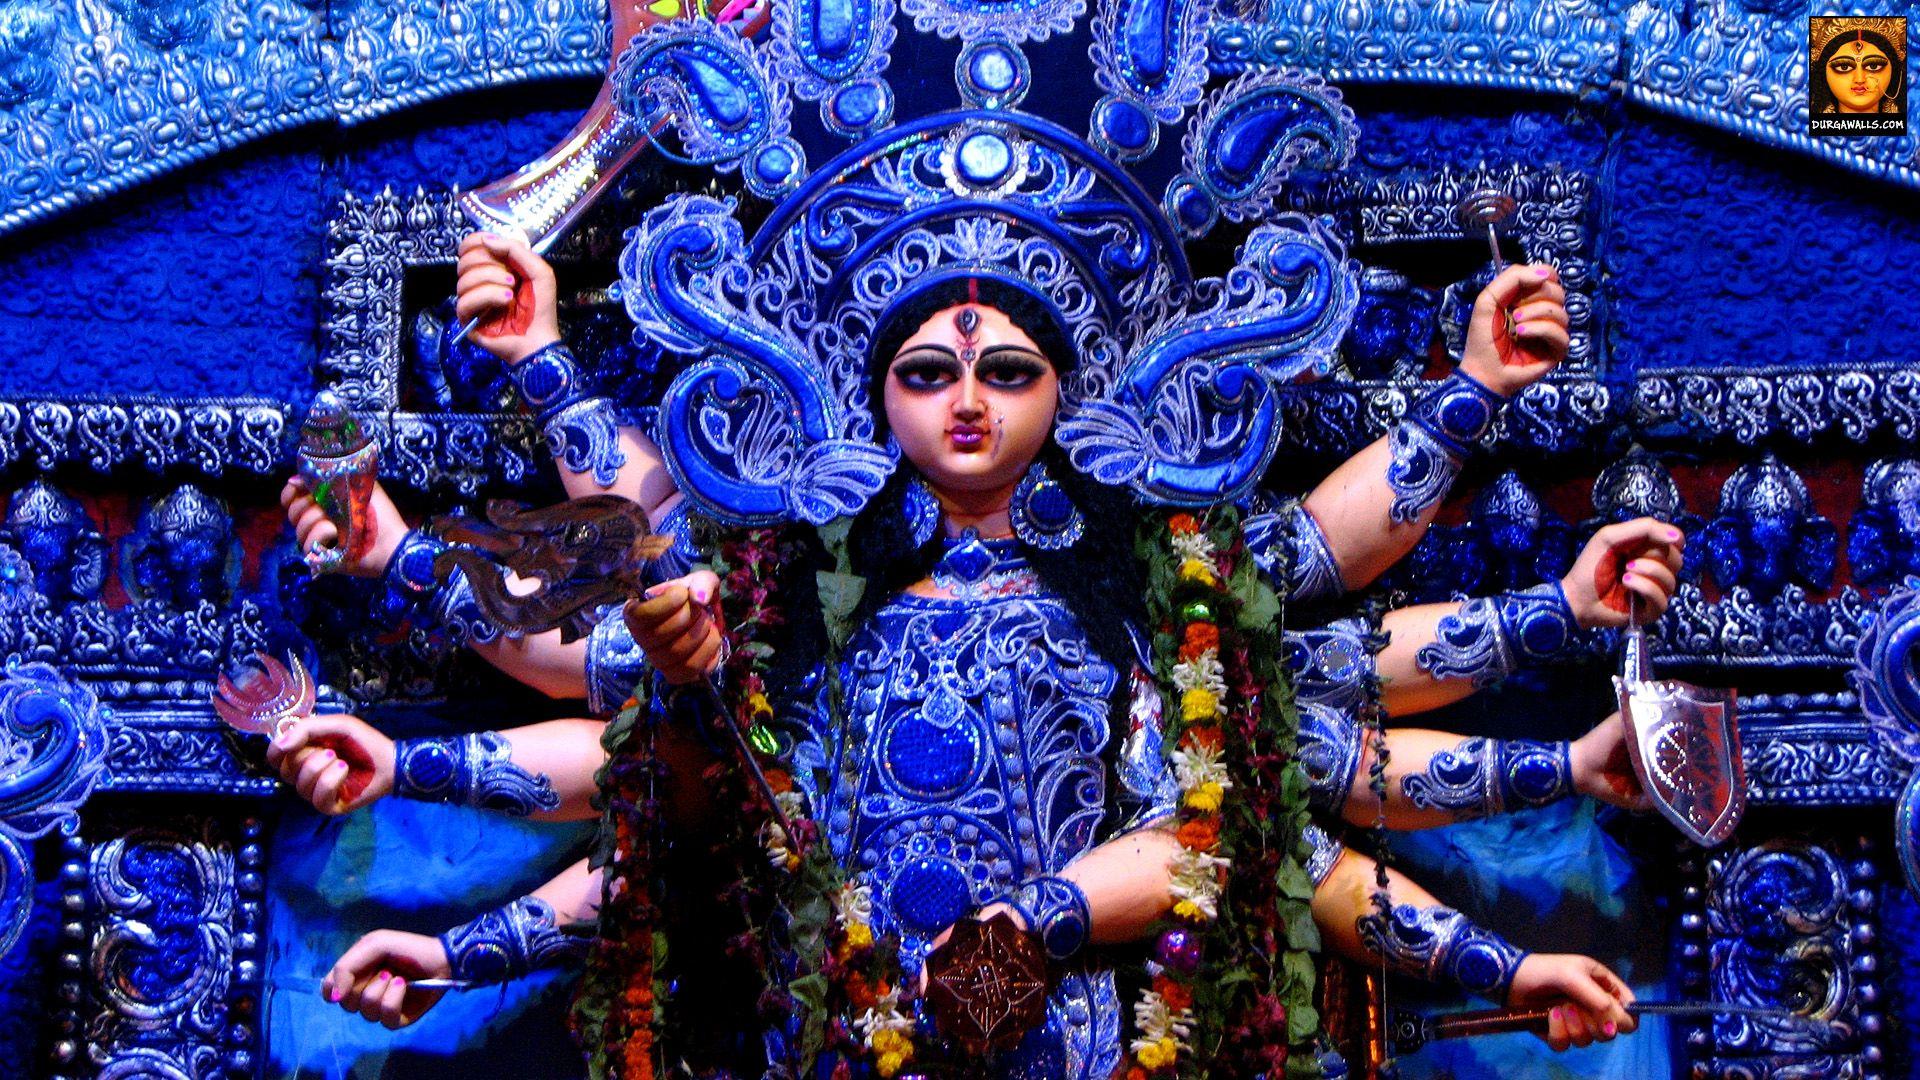 HD Wallpaper of Durga Puja Pratima for desktop or mobile